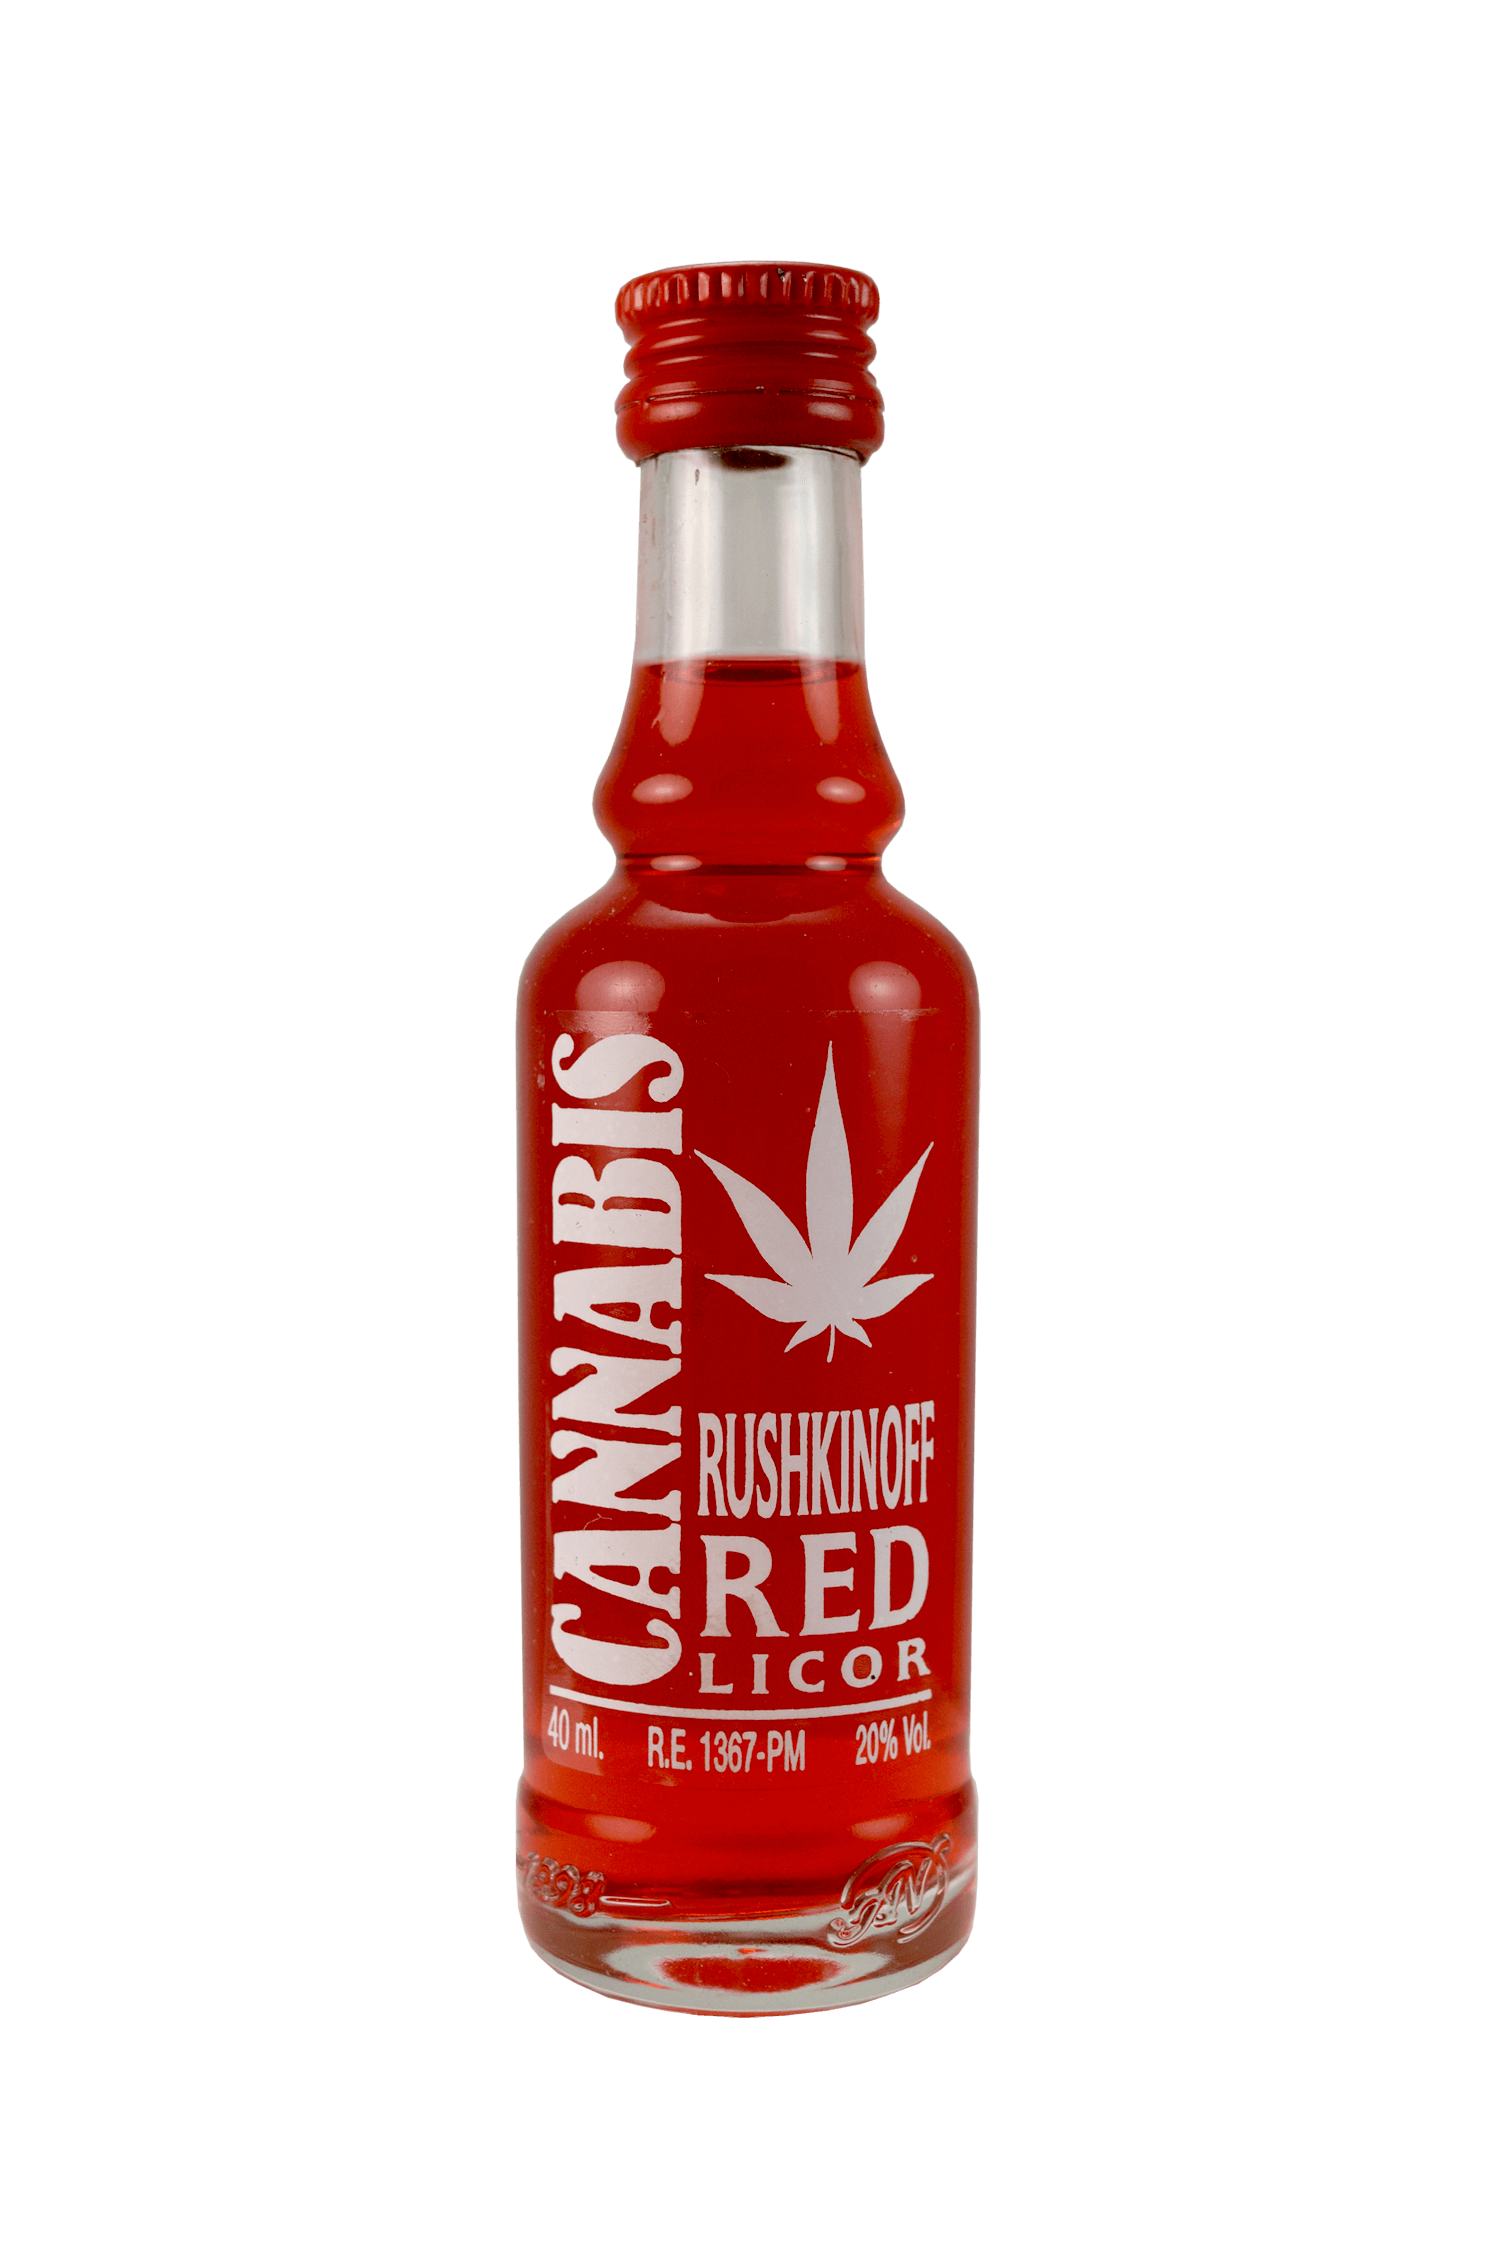 Cannabis Rushkinoff Red Licor